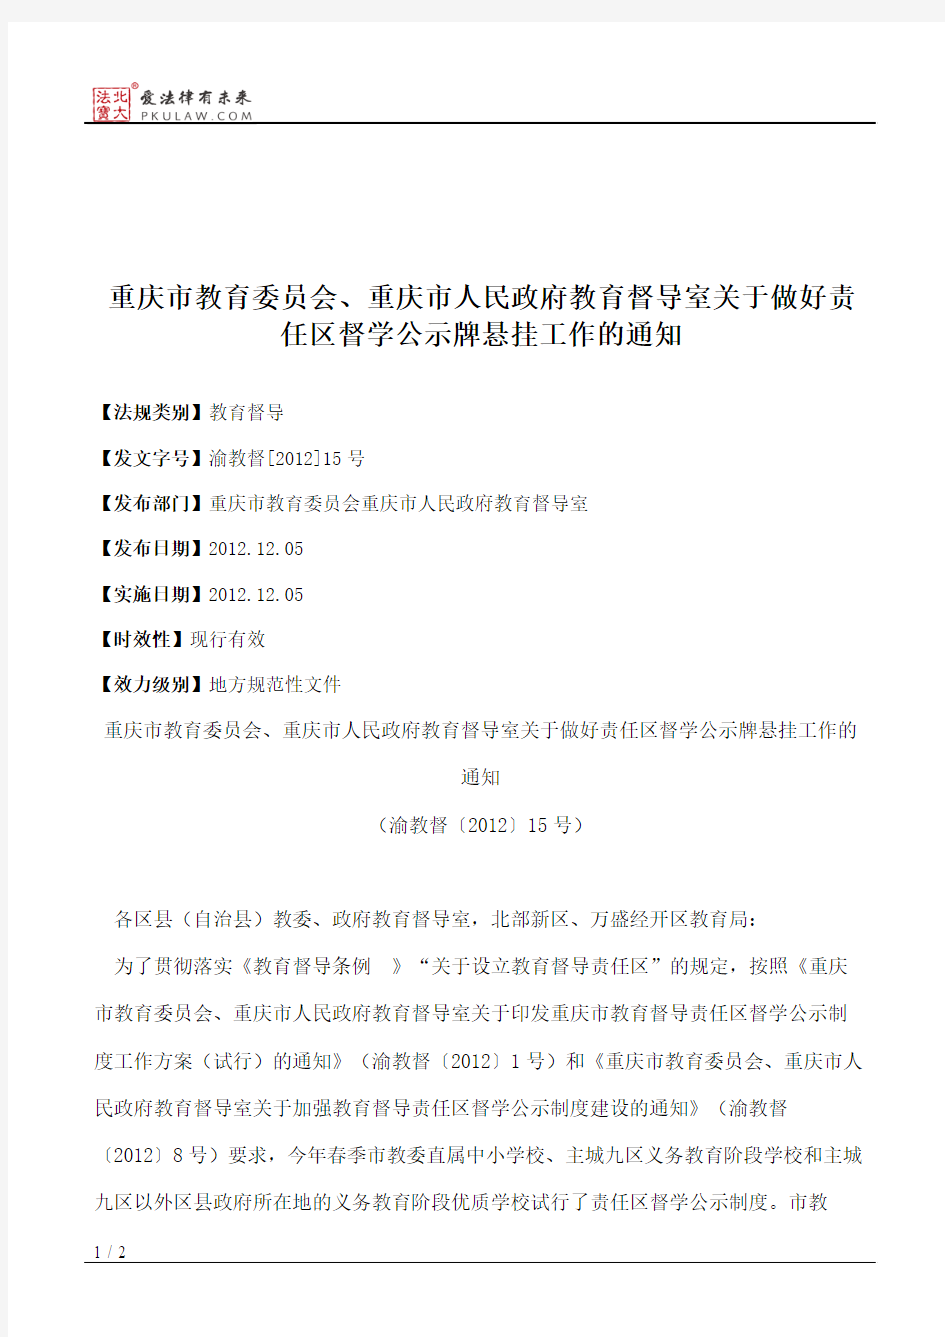 重庆市教育委员会、重庆市人民政府教育督导室关于做好责任区督学